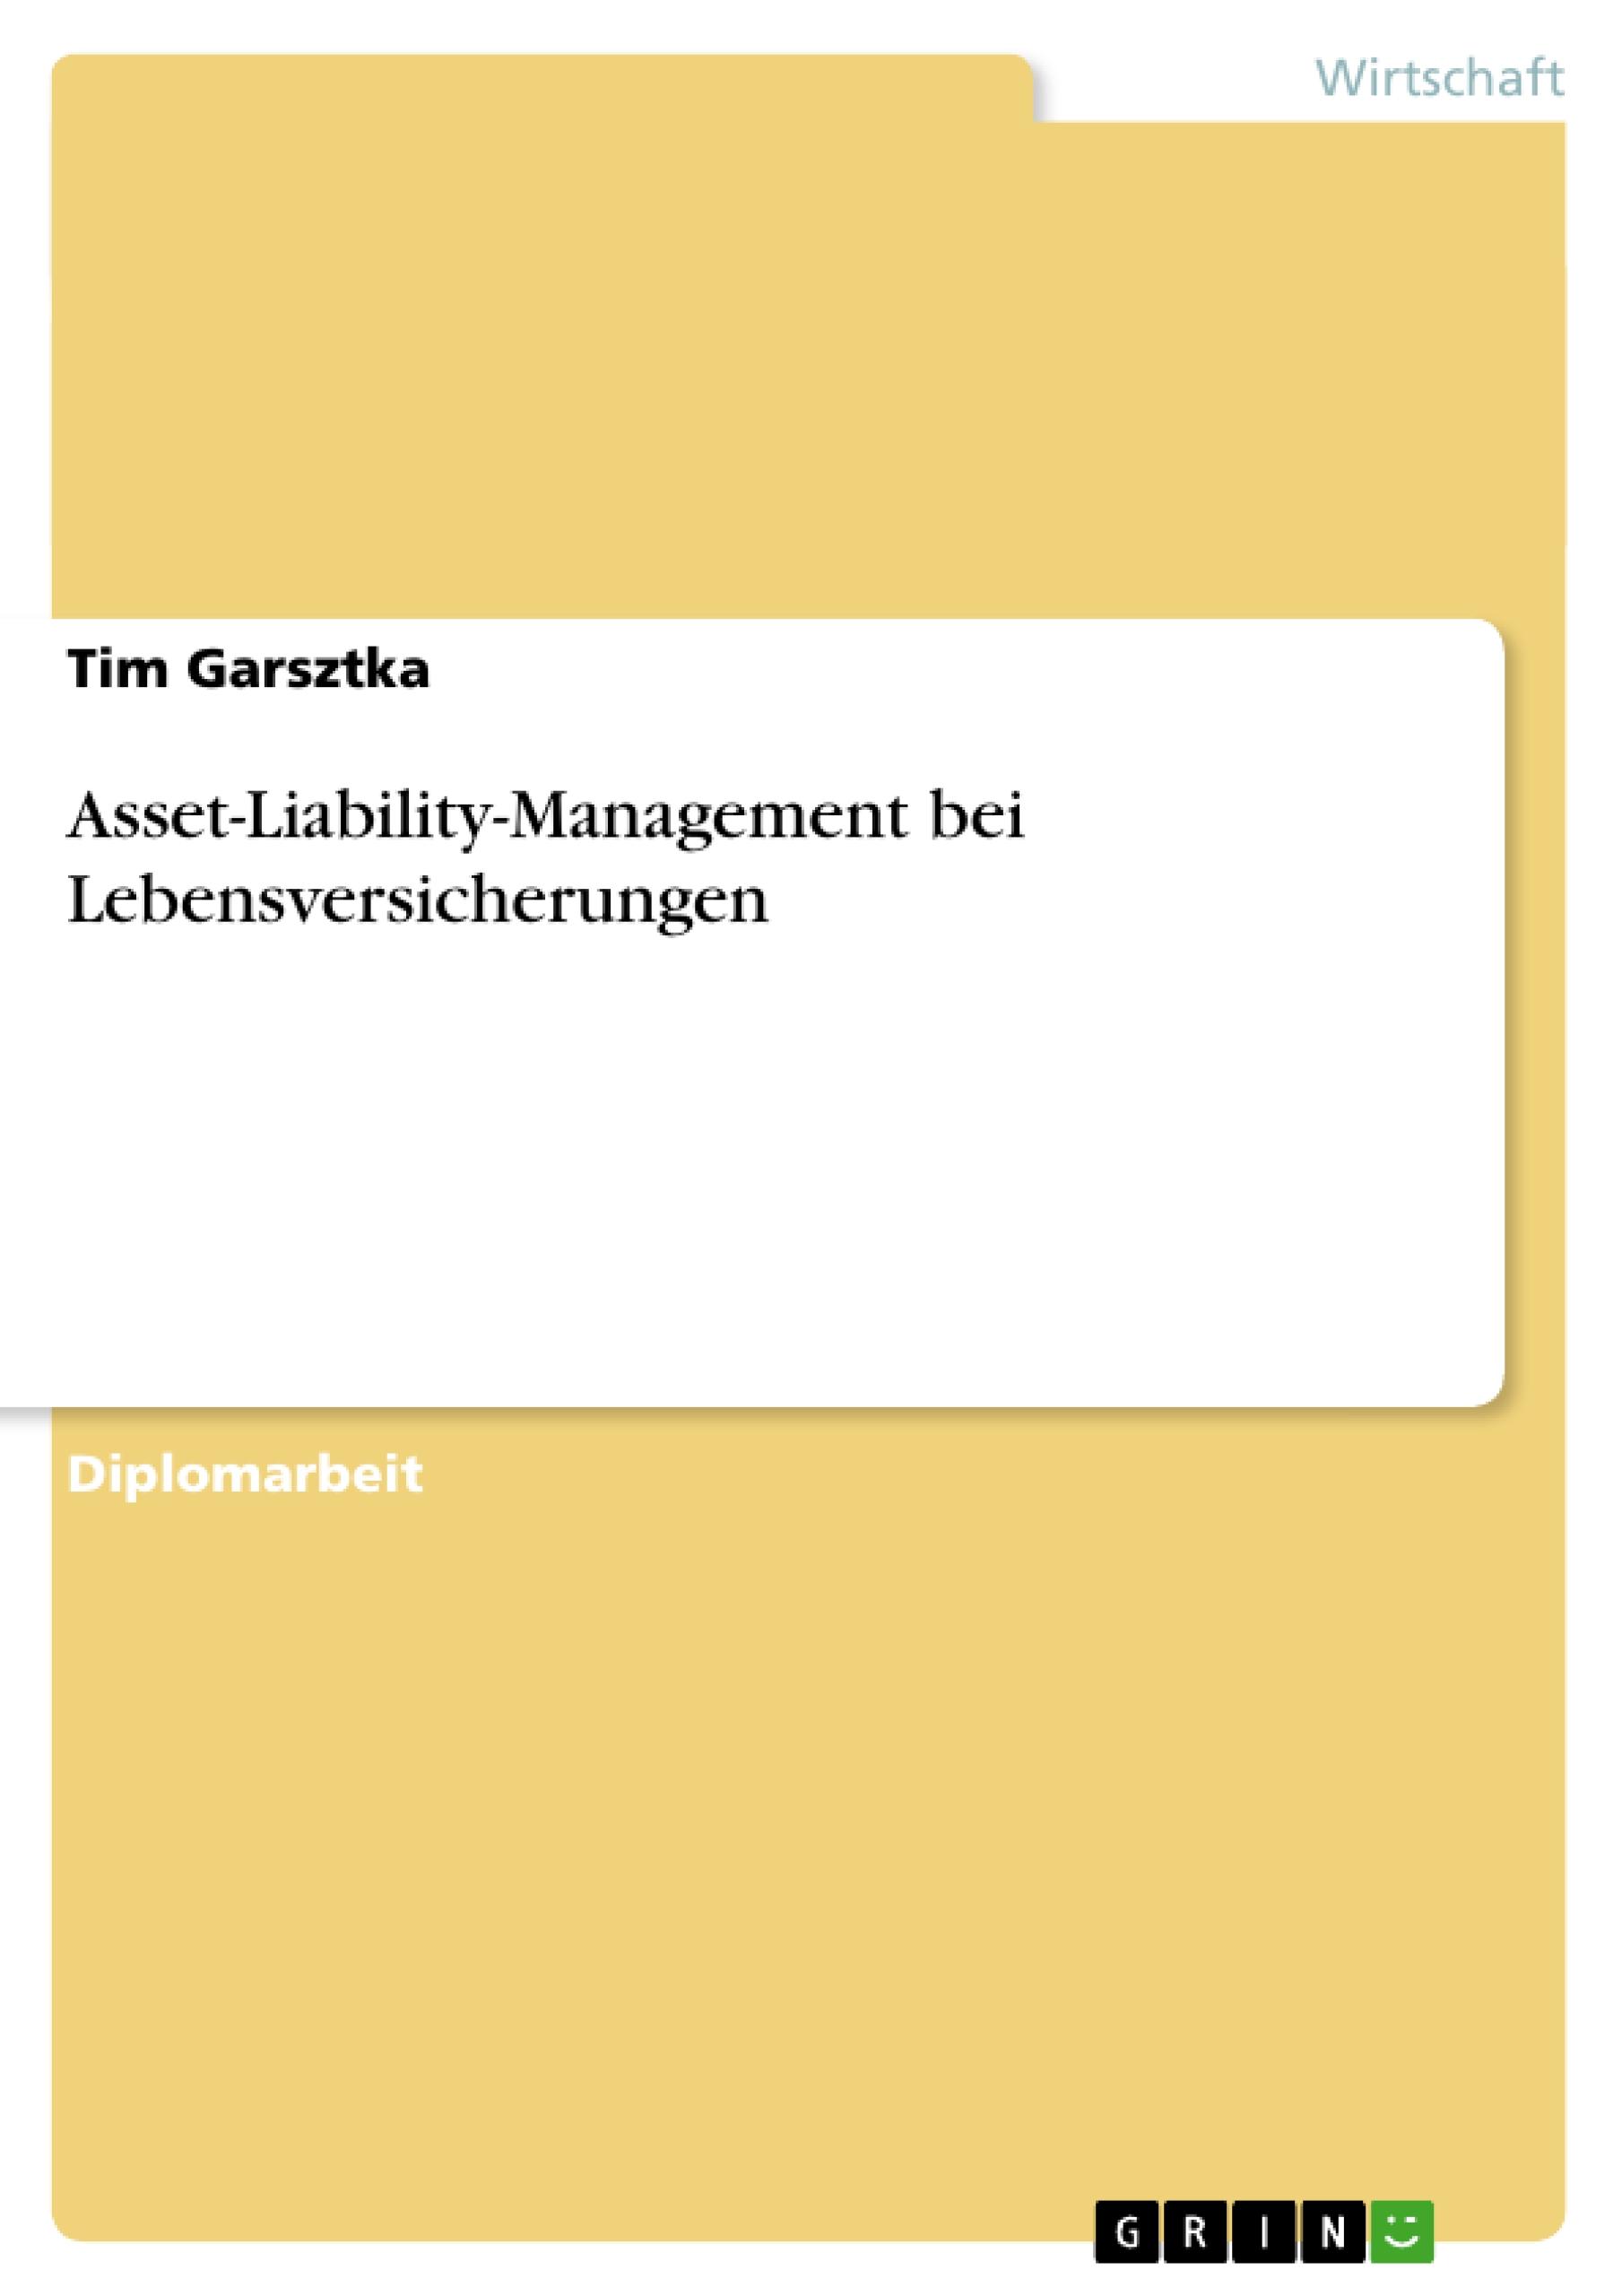 Asset-Liability-Management bei Lebensversicherungen / Tim Garsztka / Taschenbuch / Akademische Schriftenreihe Bd. V152869 / Paperback / Deutsch / 2010 / GRIN Verlag / EAN 9783640674619 - Garsztka, Tim